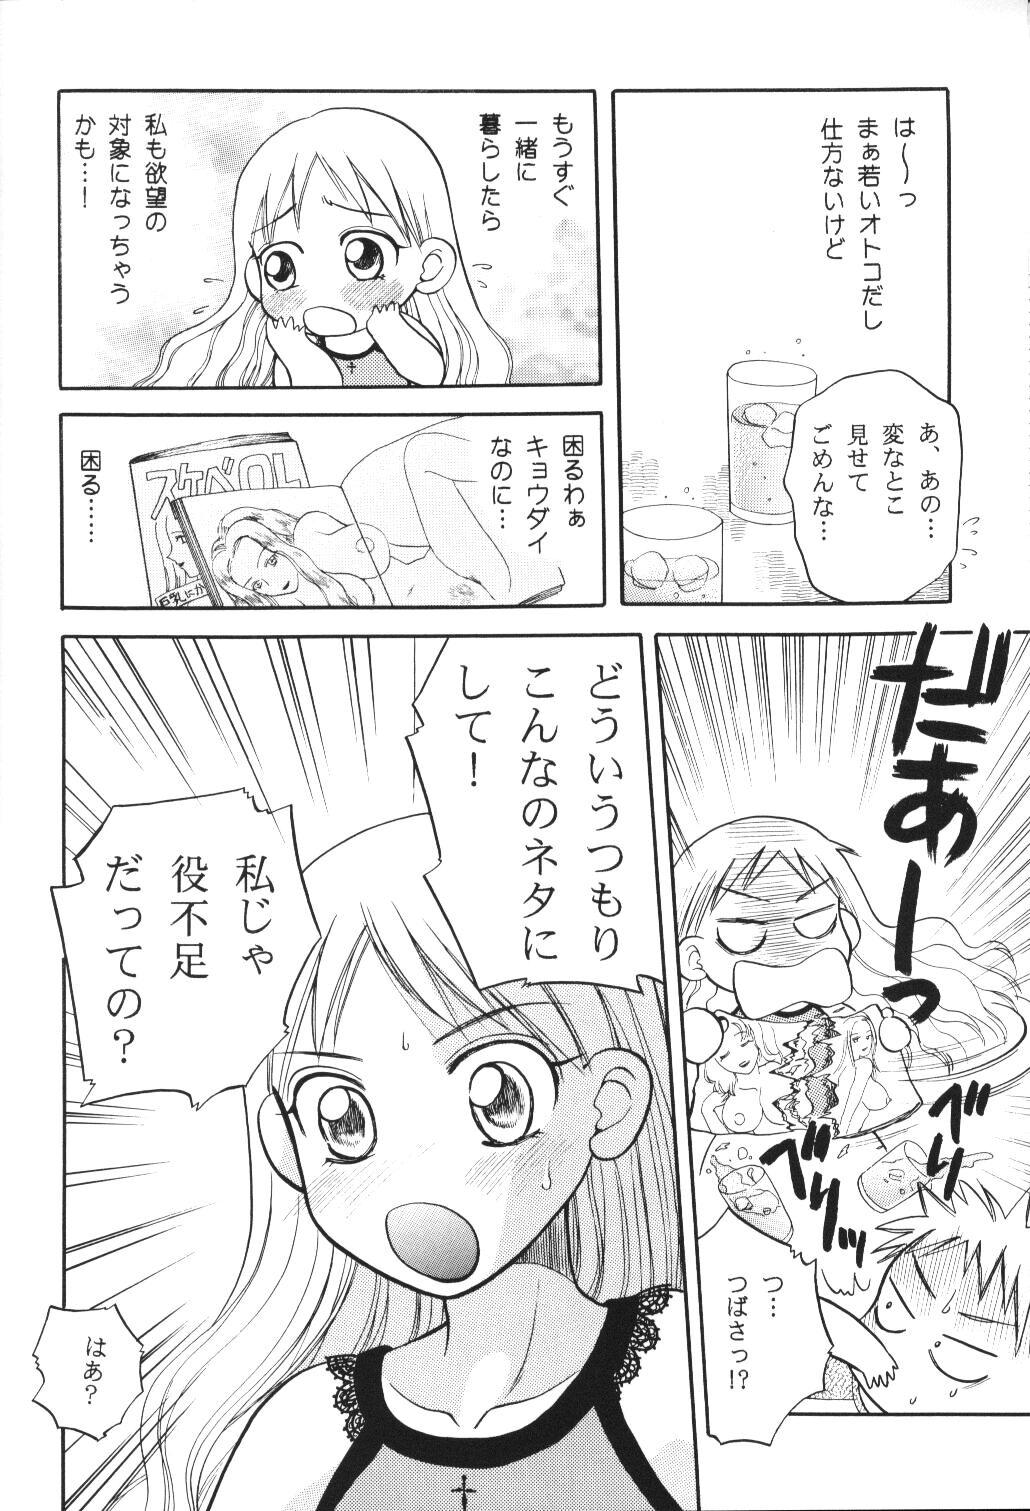 Sucking Dick Tenshi no Girigiri - Kare kano Interacial - Page 9